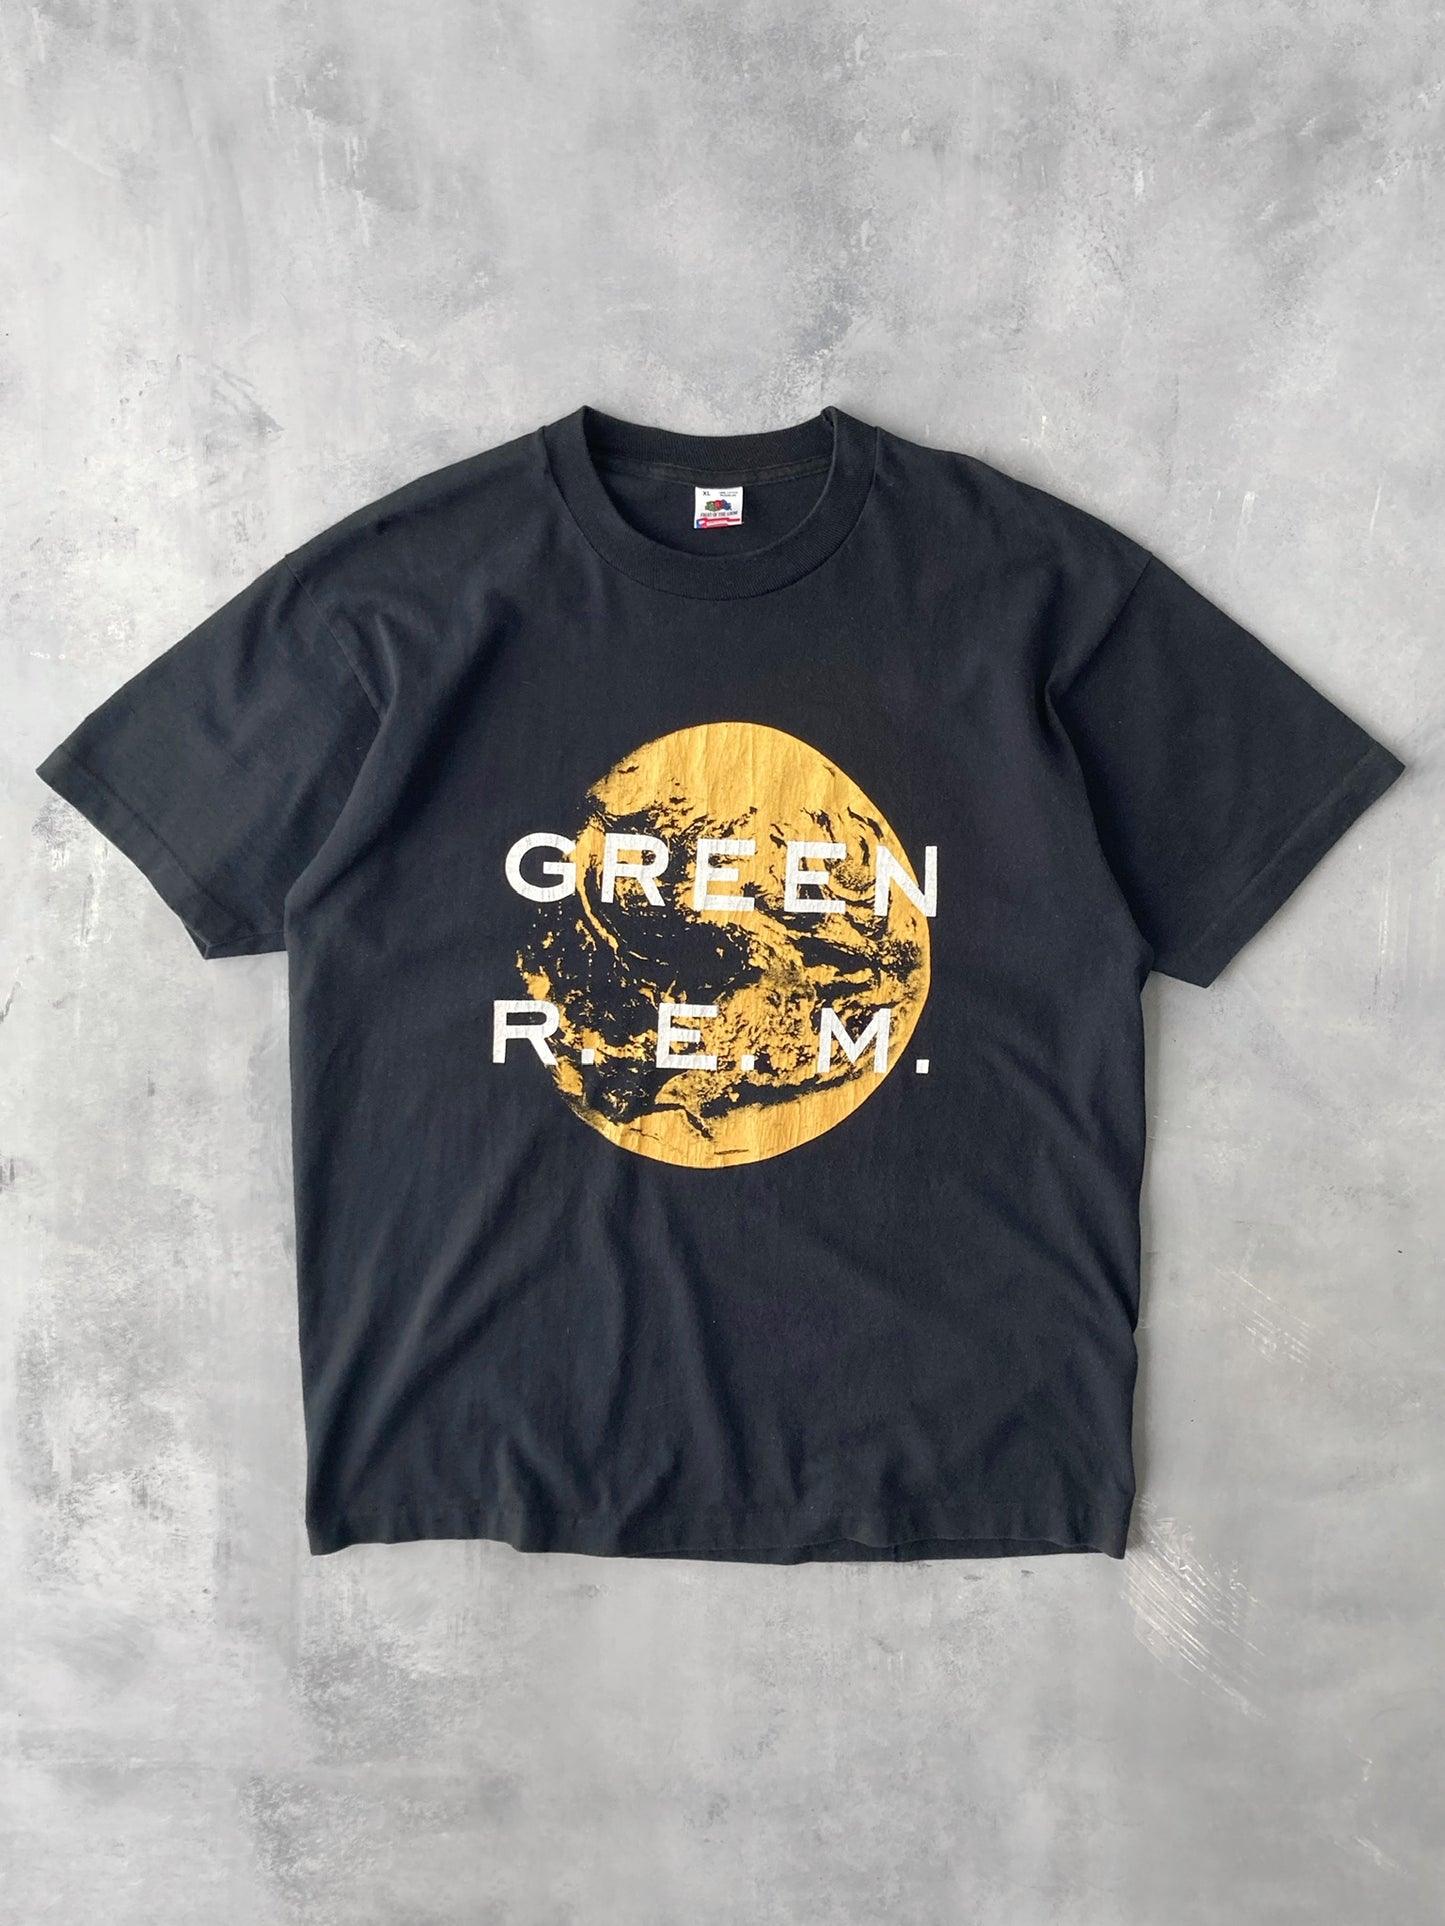 R.E.M. Green T-Shirt '88 - XL